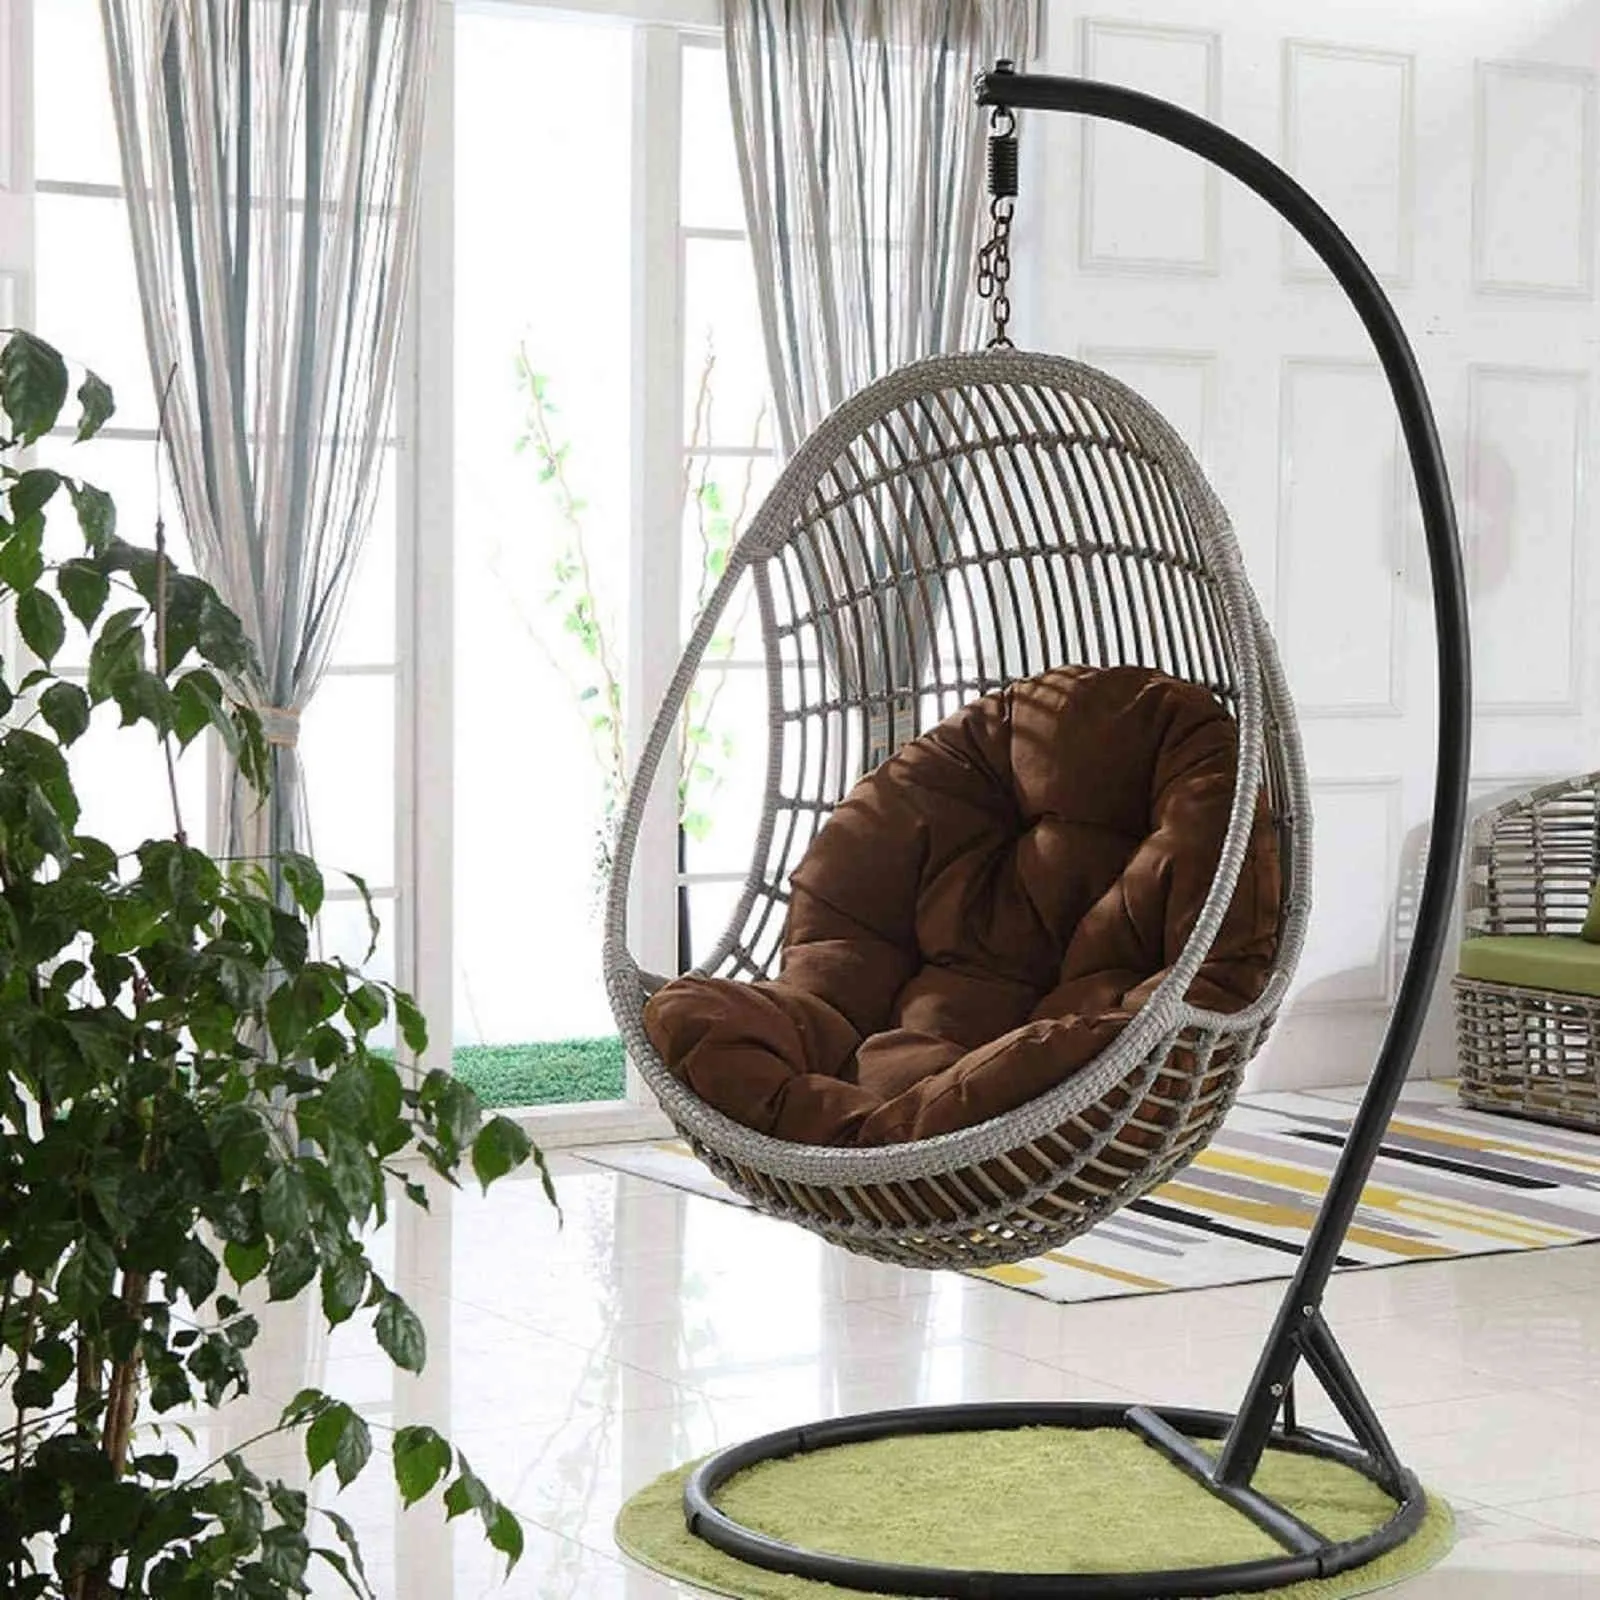 Стул с яйцом гамак сад свинг -подушка подвесное кресло с декоративной подушкой 5235643